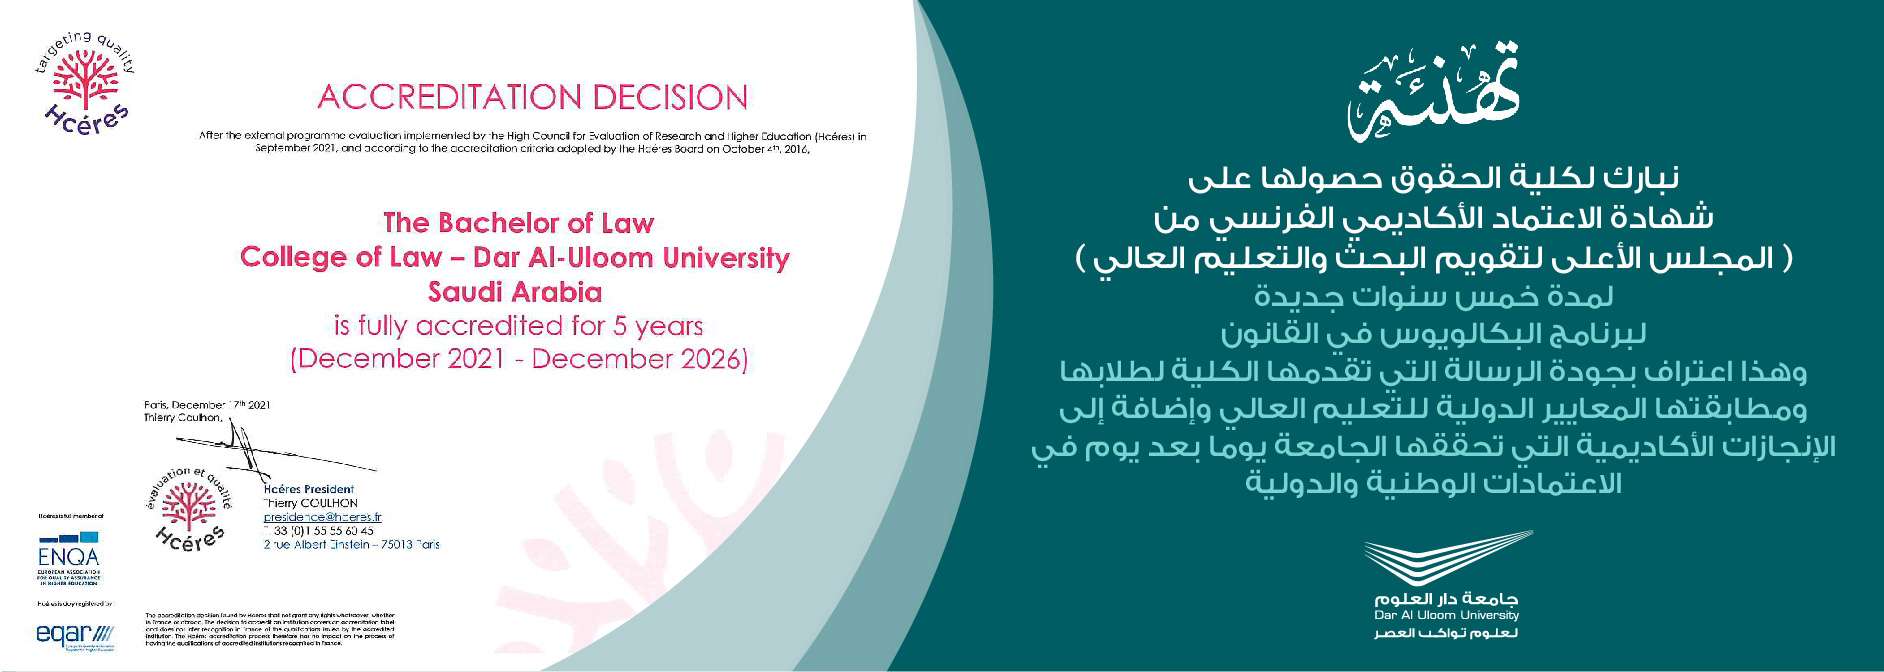 اليمامة lms جامعة Lms Al